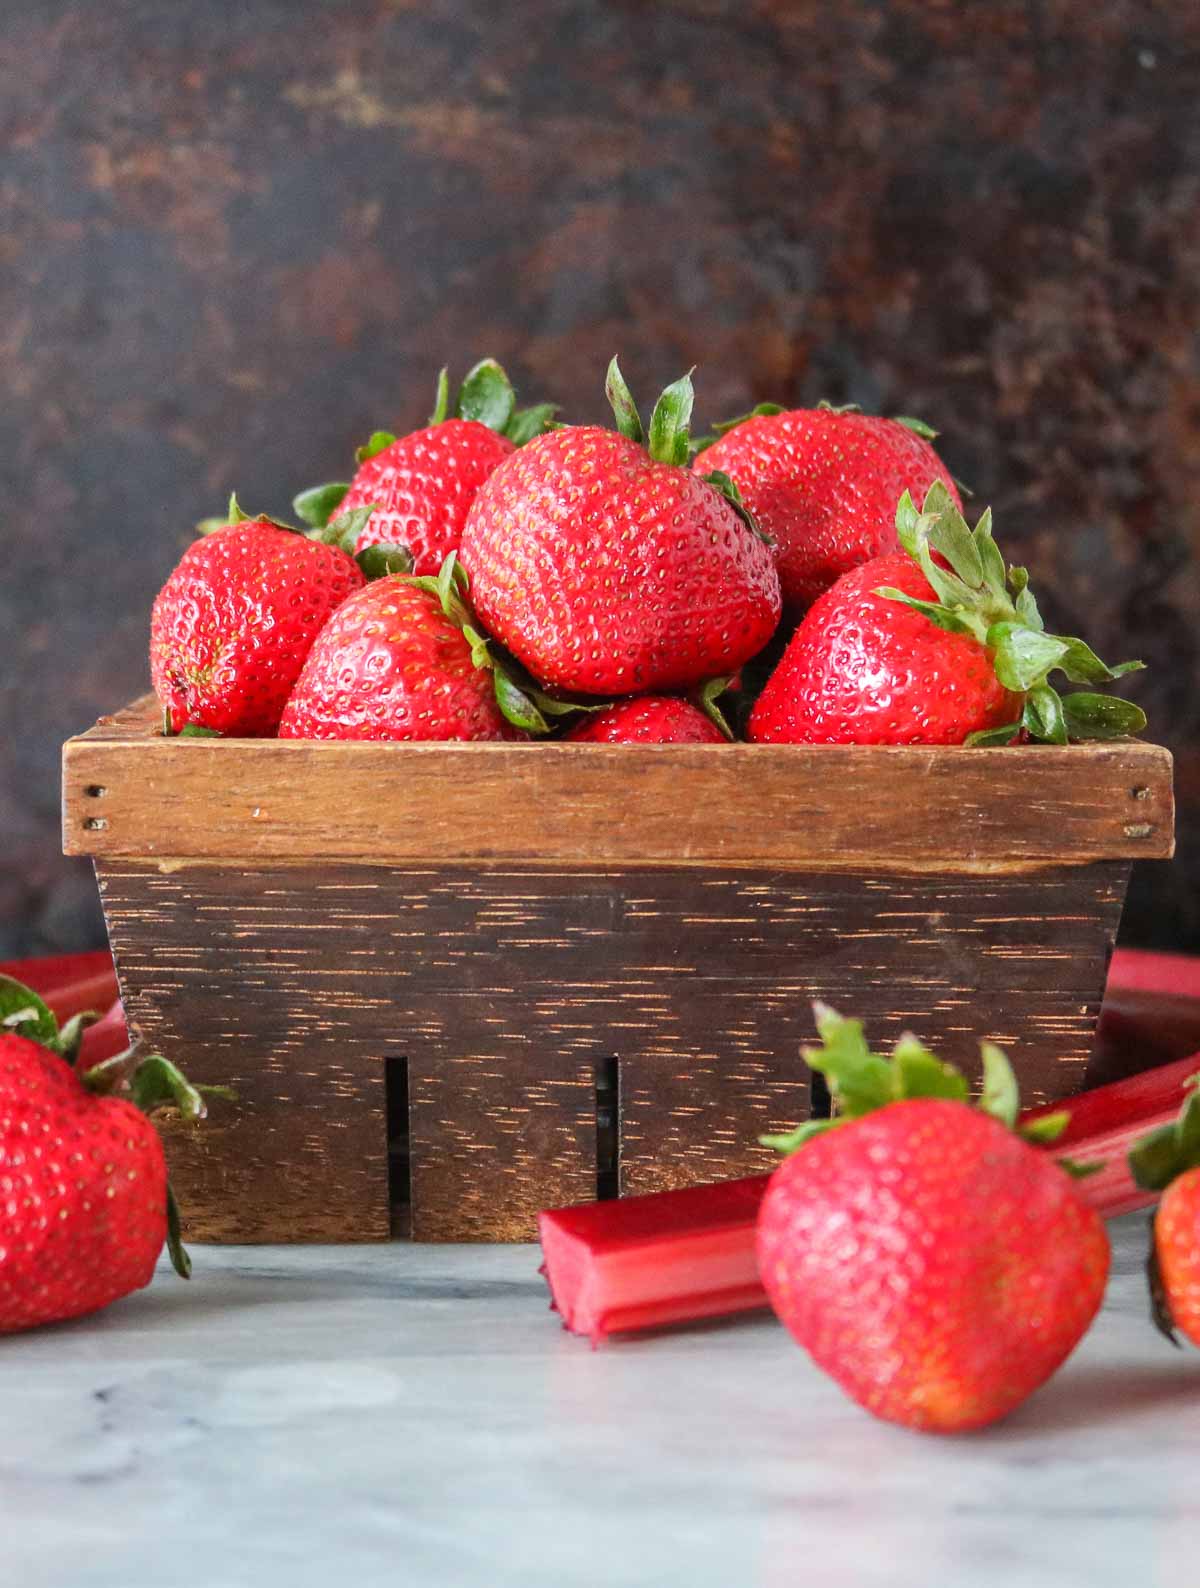 Basket of strawberries alongside stalks of rhubarb.